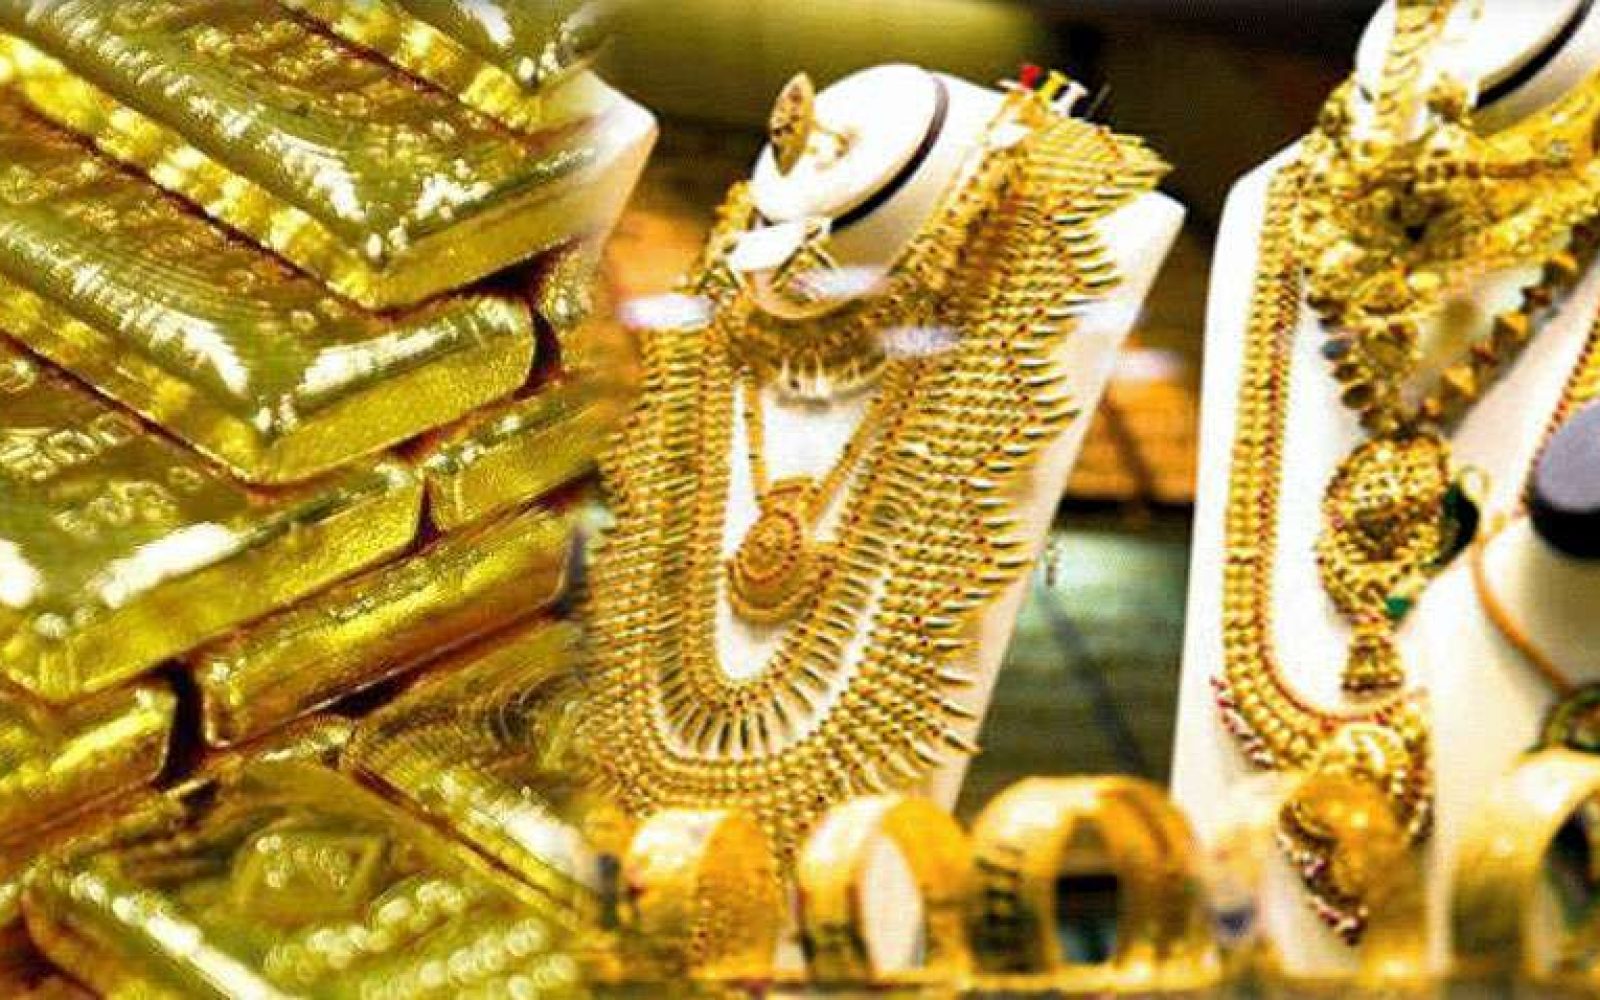 أسعار الذهب في مصر اليوم 2 8 2020 واستقرار عيار 21 عند 879 جنيها جريدة المال